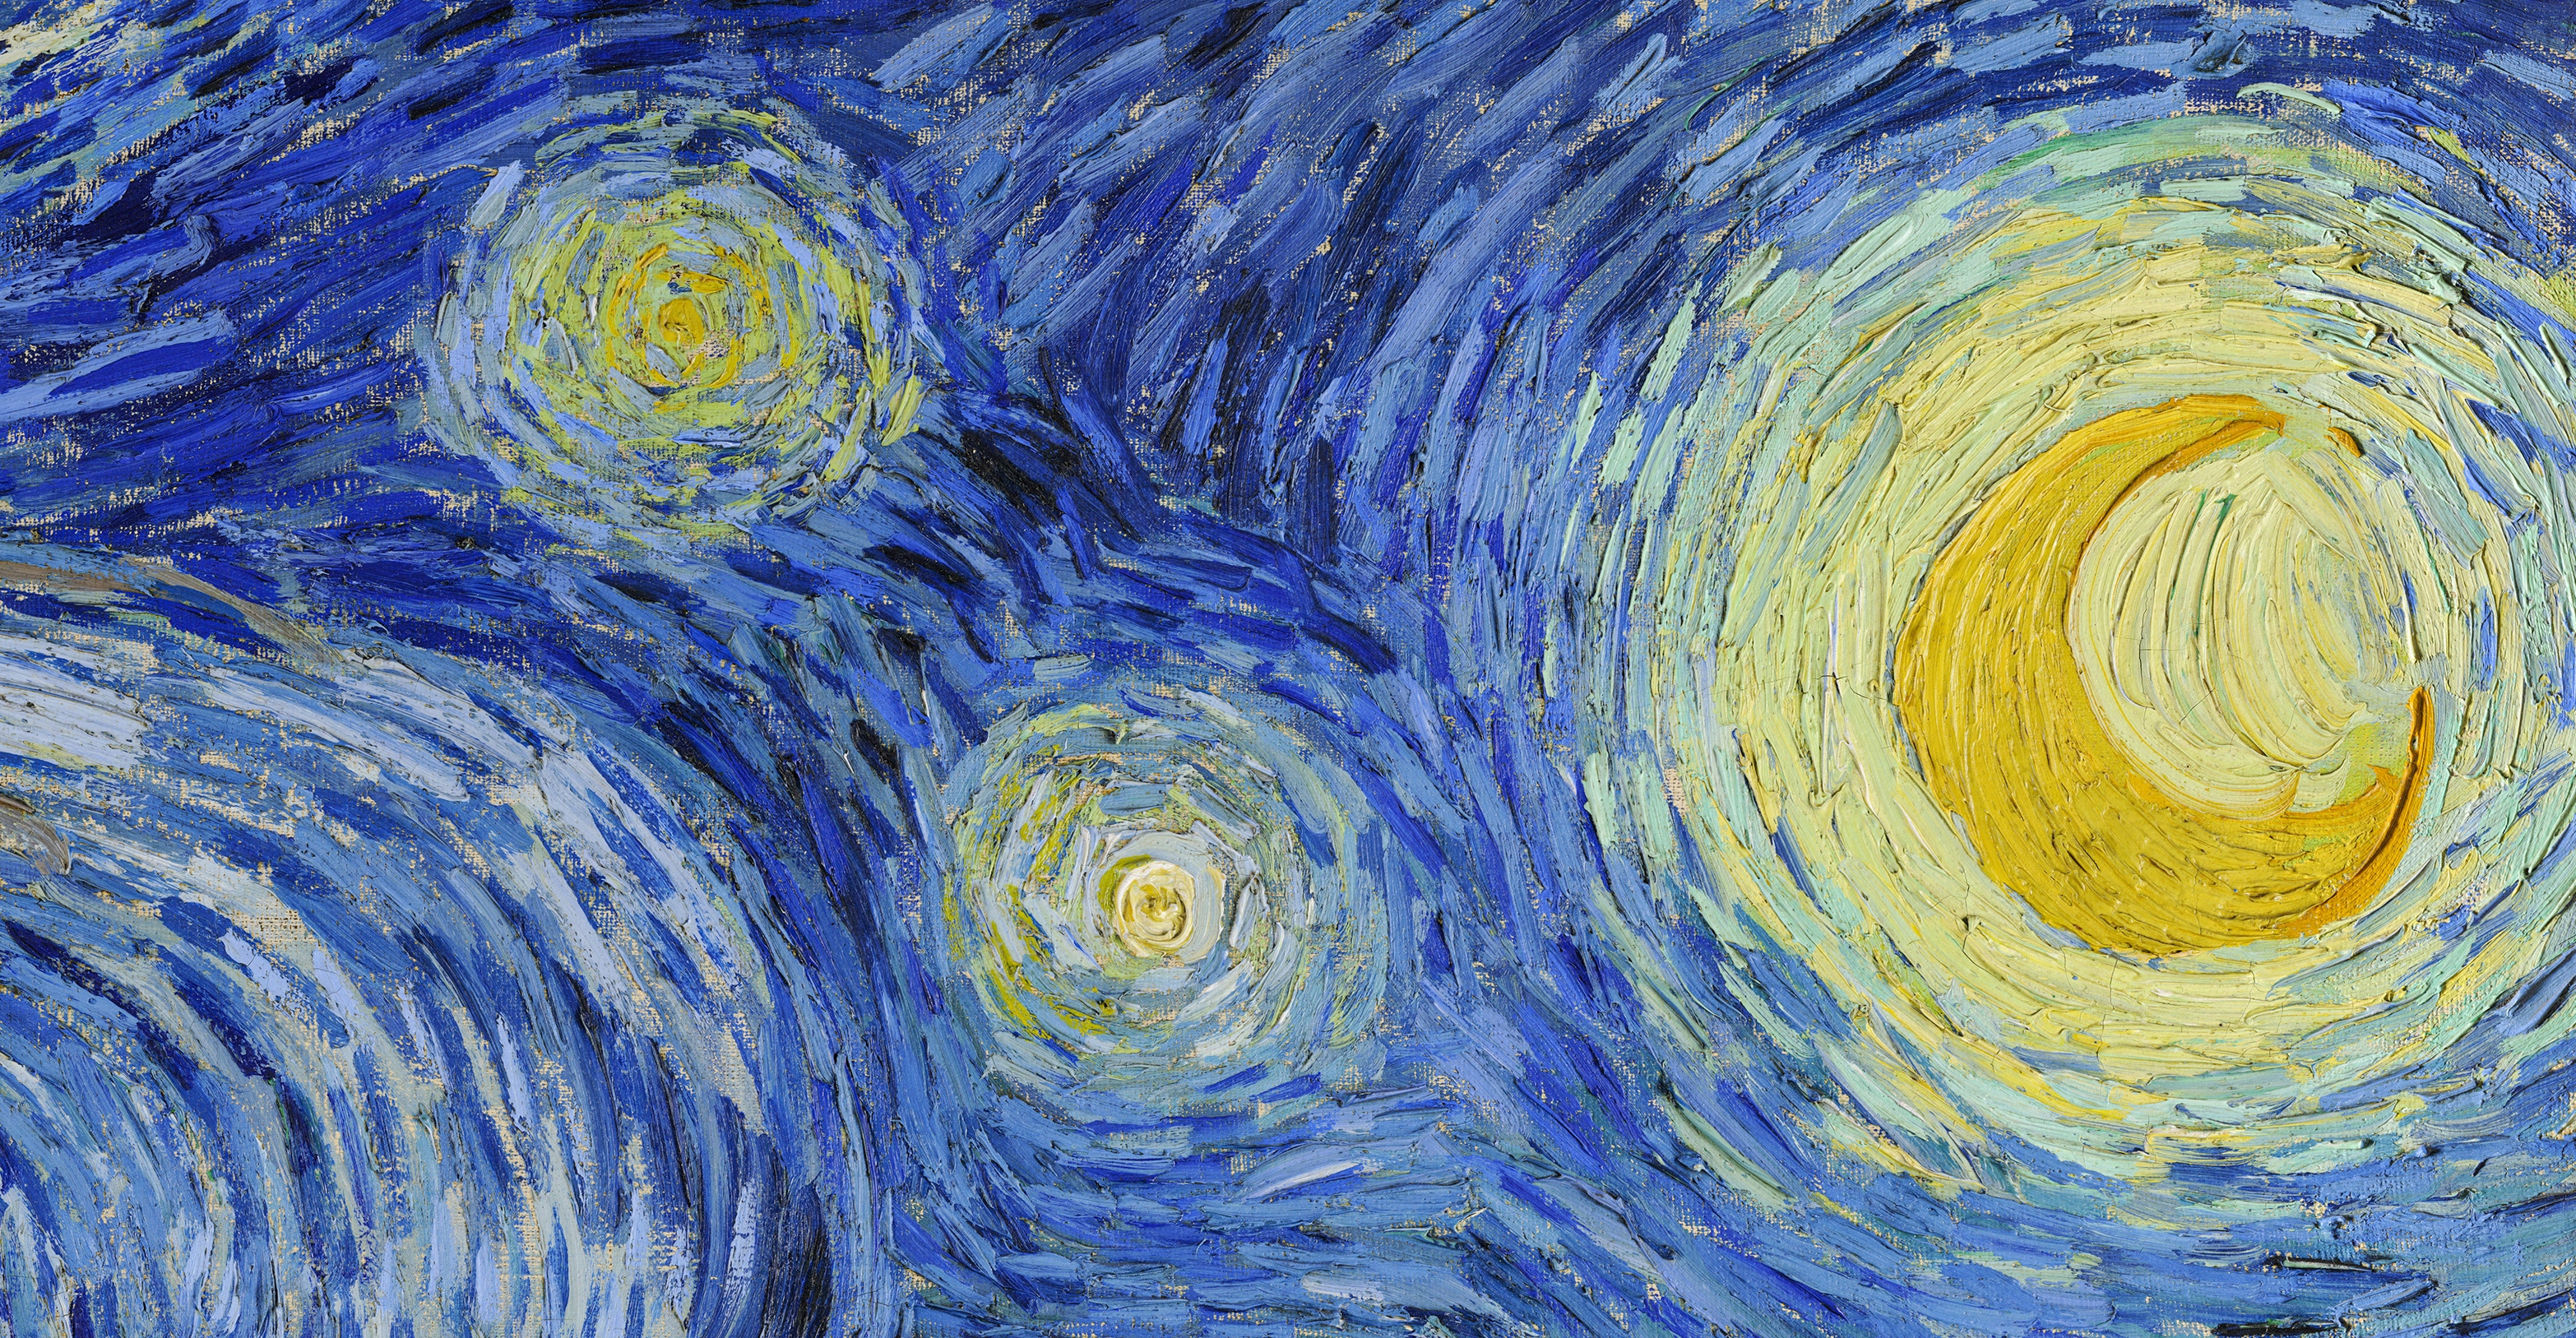 La Nuit étoilée (en néerlandais De sterrennacht) est une peinture de Vincent Van Gogh souvent présentée comme son grand œuvre. Le tableau représente ce que Van Gogh pouvait voir et extrapoler de la chambre qu'il occupait dans l'asile du monastère Saint-Paul-de-Mausole à Saint-Rémy-de-Provence en mai 1889. Il est maintenant conservé dans le Museum of Modern Art (MoMA) à New York depuis 1941. © GiorgioMorara, Adobe Stock